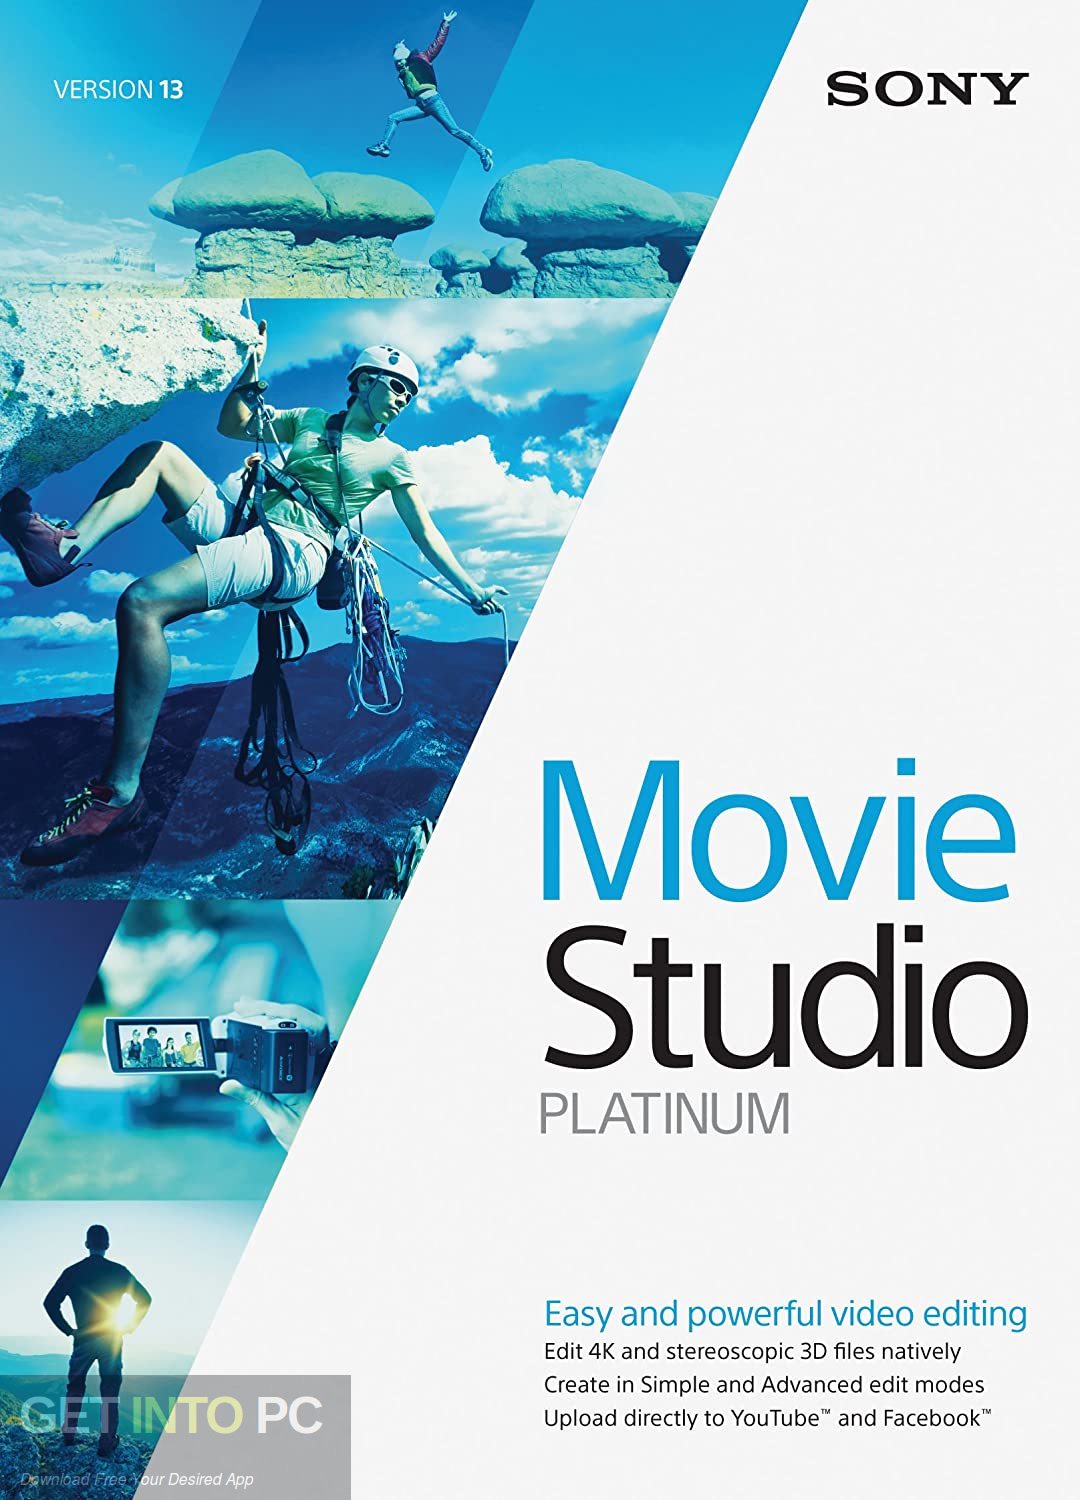 MAGIX VEGAS Movie Studio Platinum Free Download